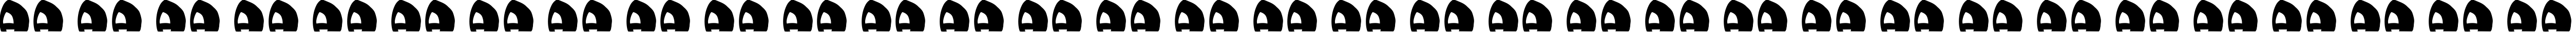 Пример написания русского алфавита шрифтом moonie